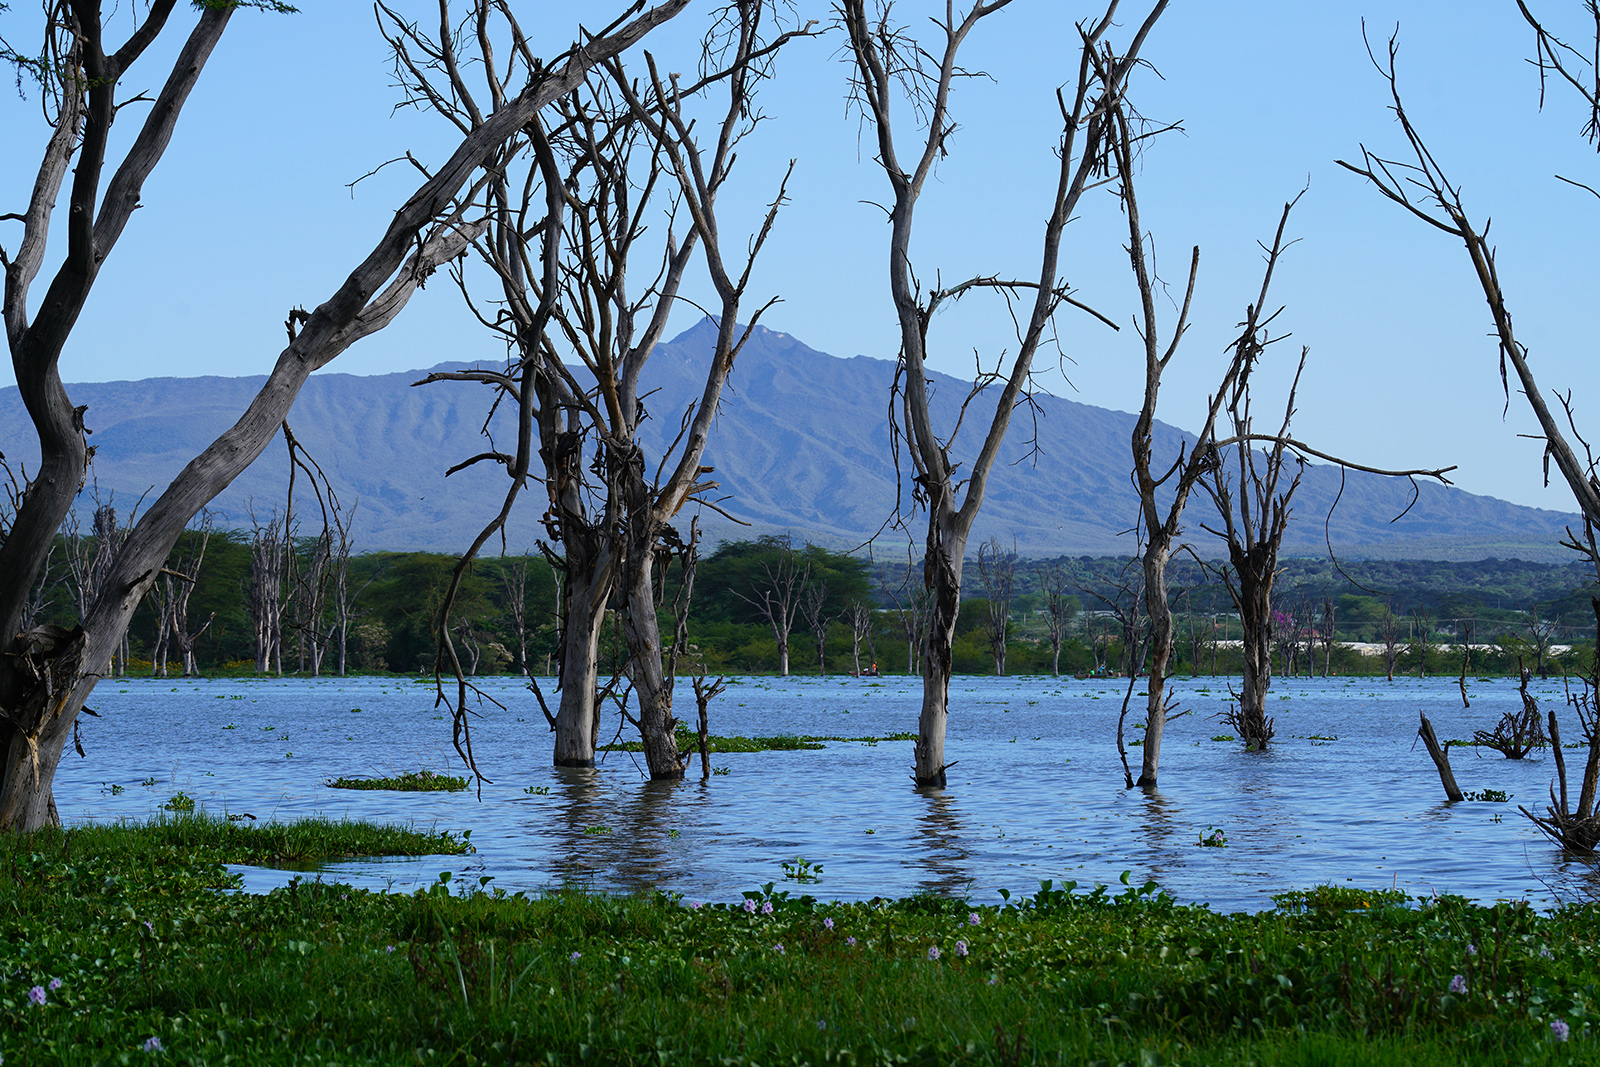 Crescent Island Sanctuary and Lake Naivasha